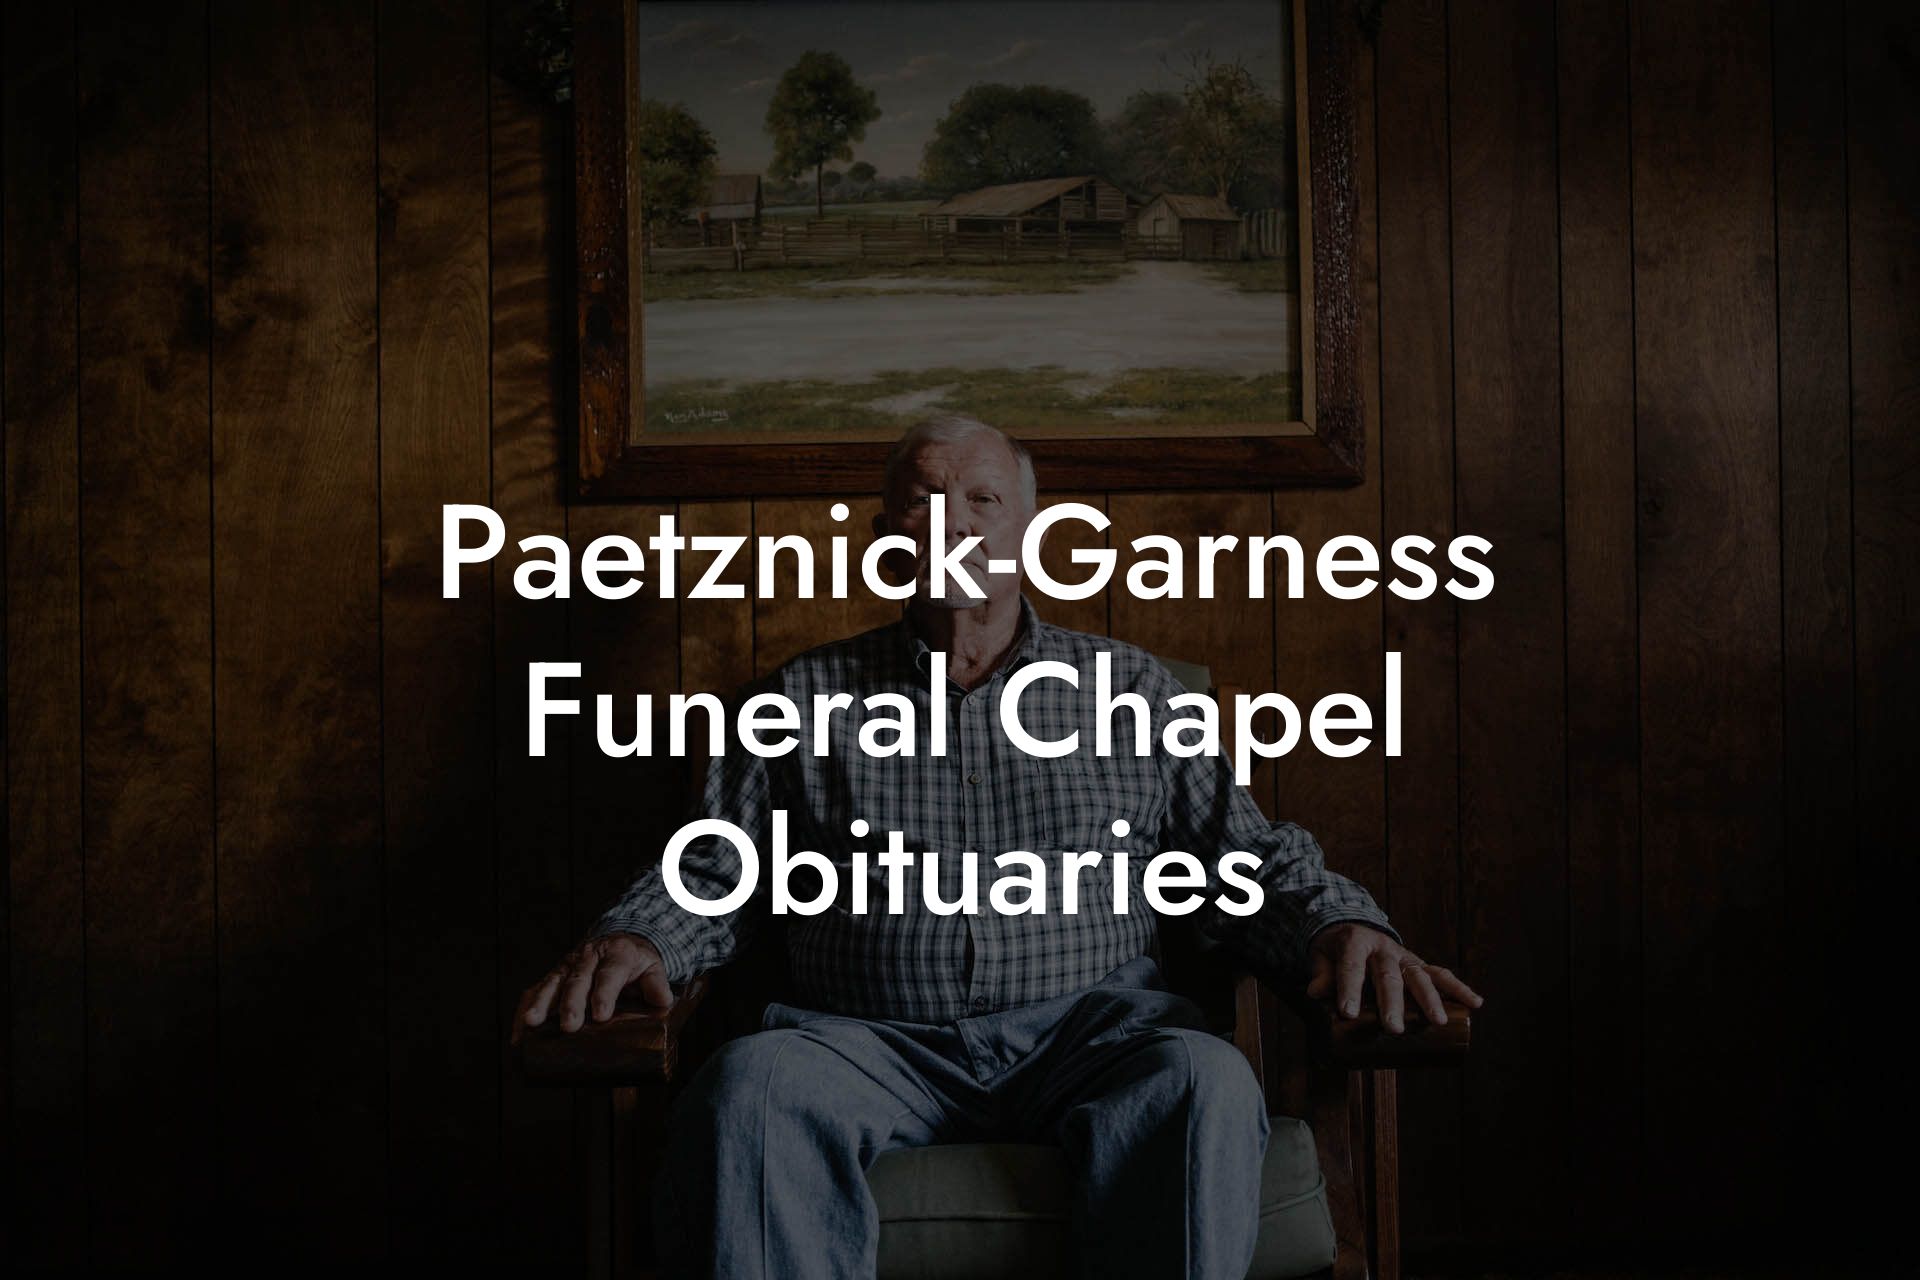 Paetznick-Garness Funeral Chapel Obituaries